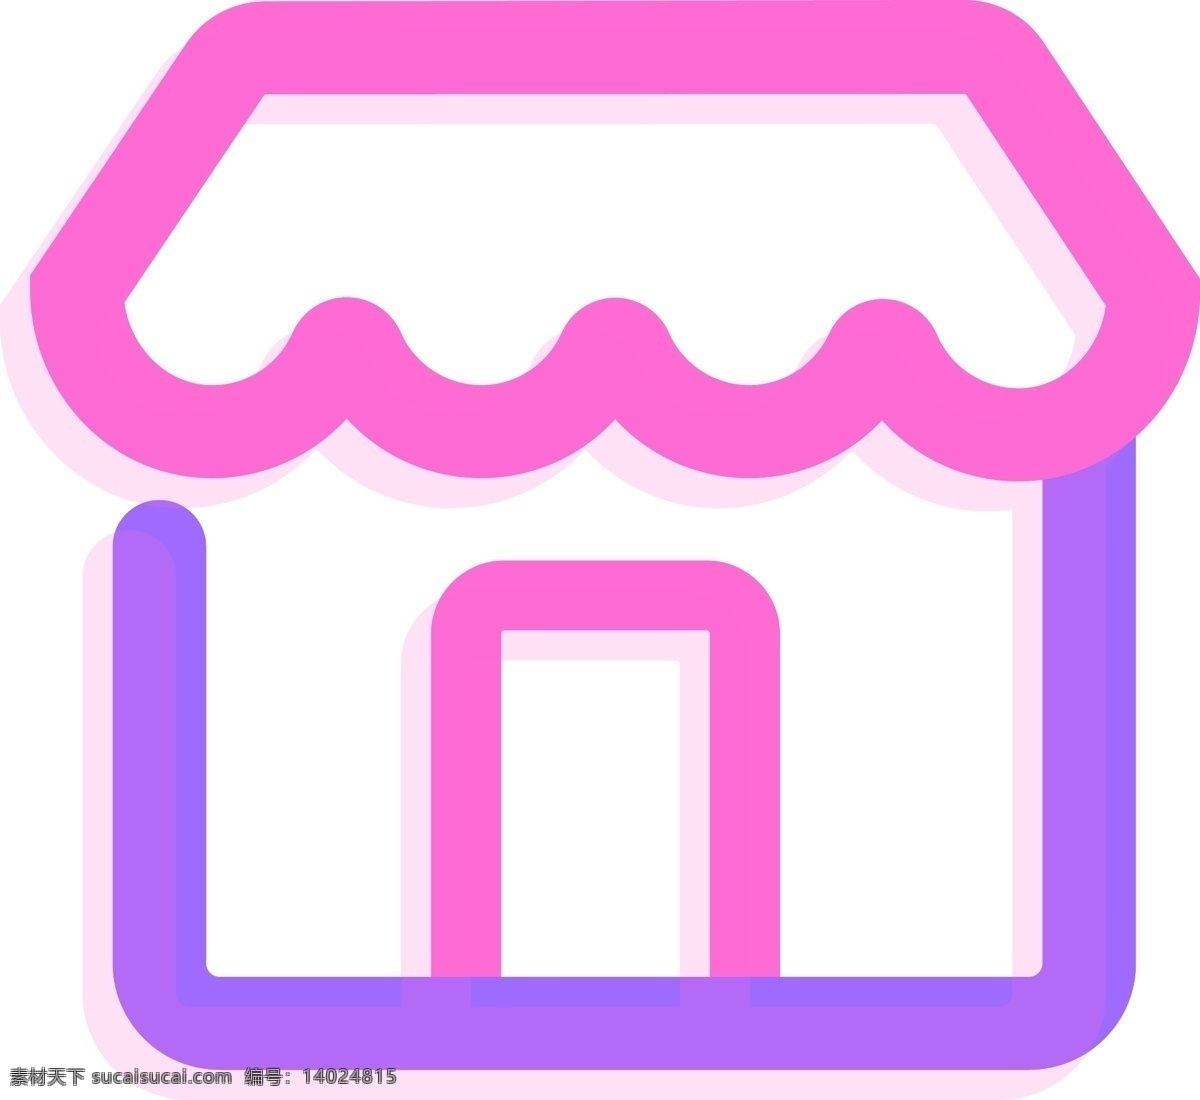 粉 紫色 荧光 商店 矢量 图标 粉紫色商店 荧光商店